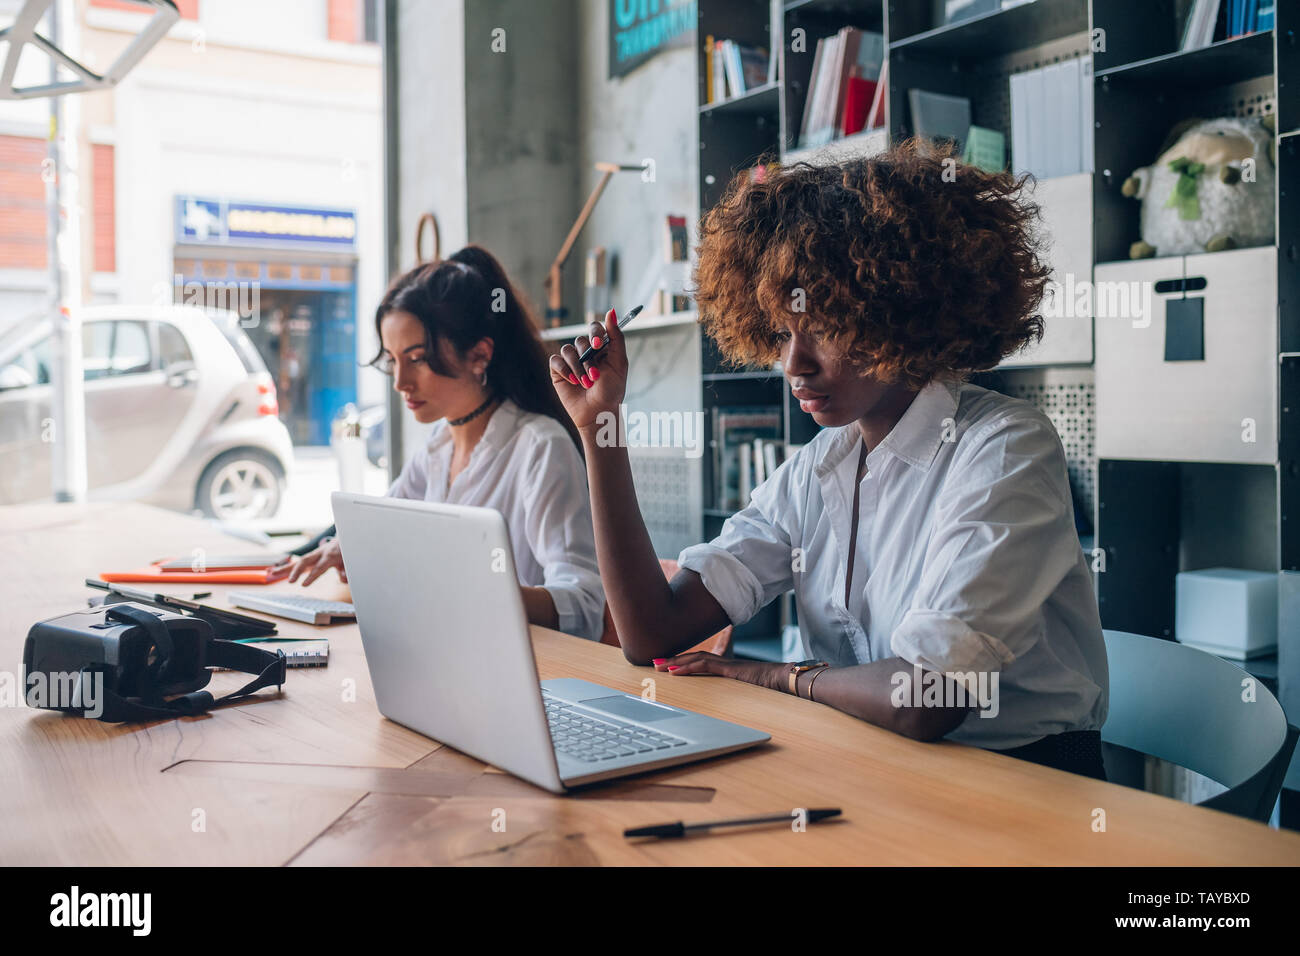 Dos jóvenes mujeres multirracial de escribir y trabajar con dispositivos digitales modernos en espacio de coworking - freelance, interacción, concentración Foto de stock